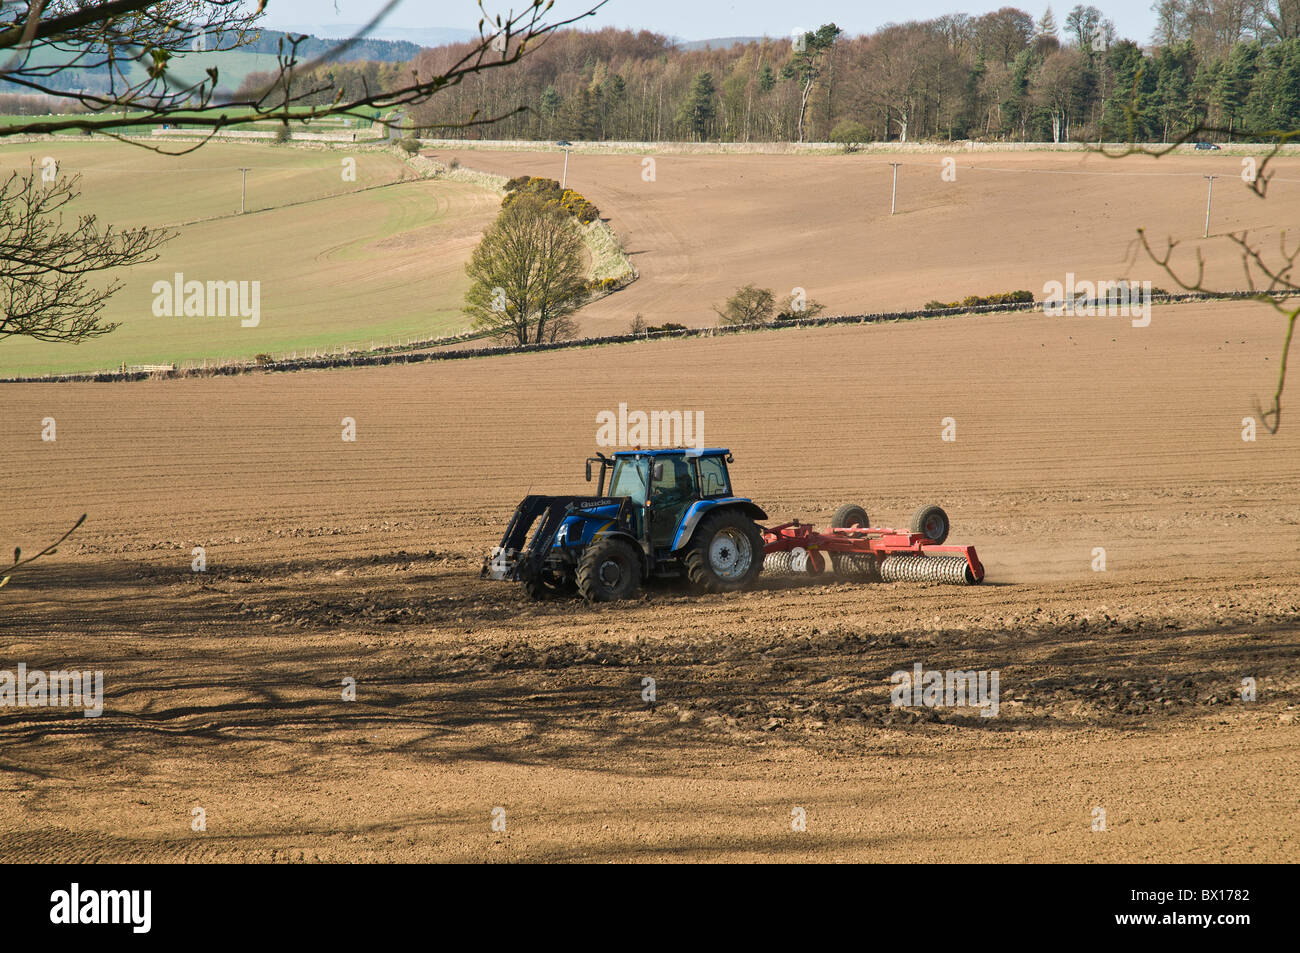 dh AGRICULTURA FIFE Tractor escocés Raqueo de campos labrados de labranza de campo scotland Farm Foto de stock